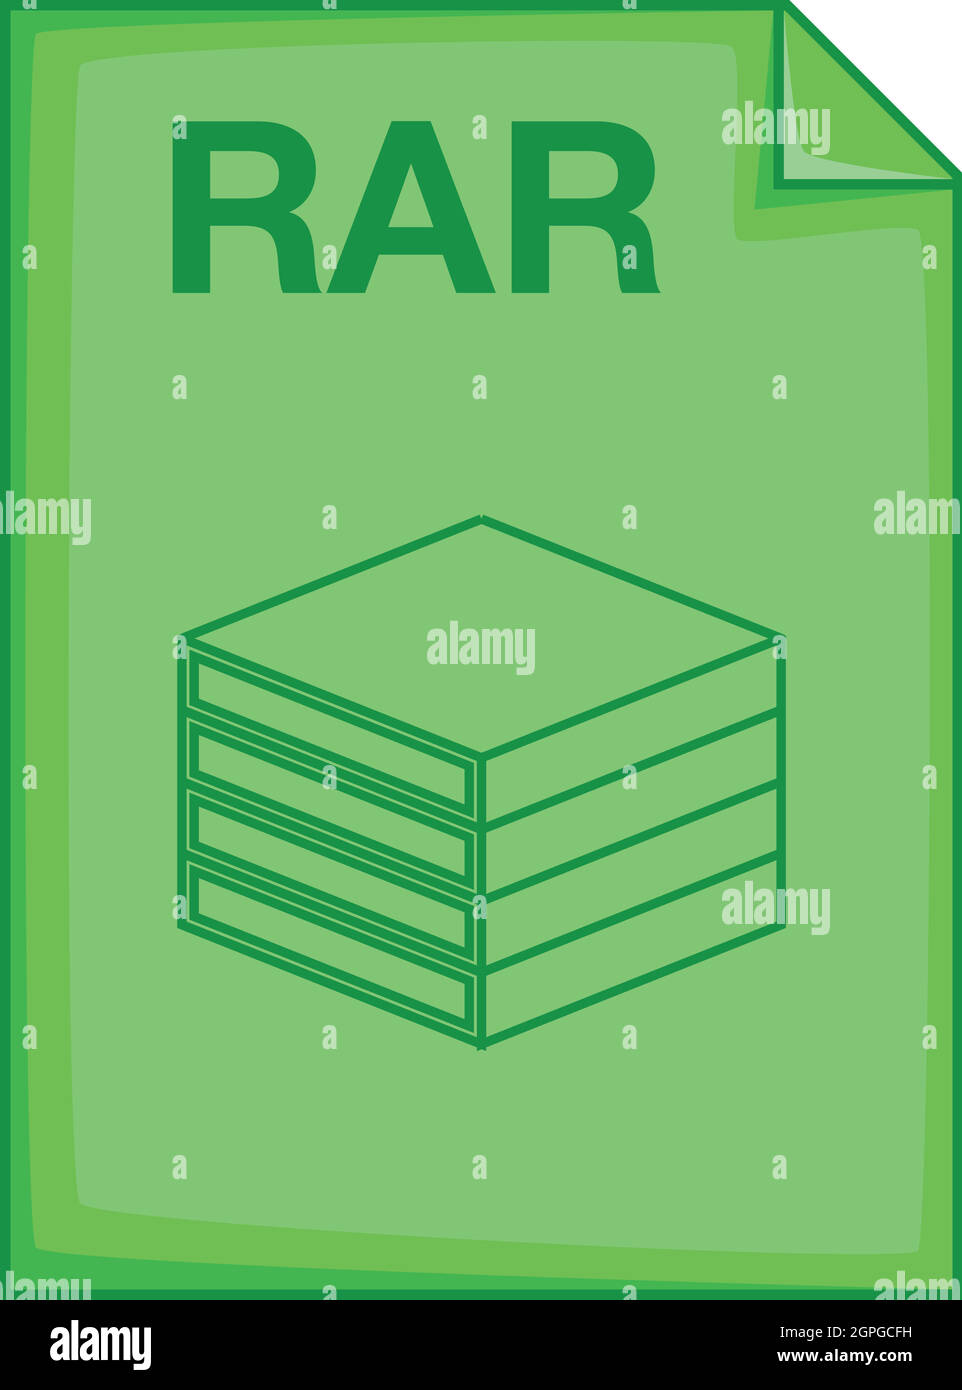 RAR file icon, cartoon style Stock Vector